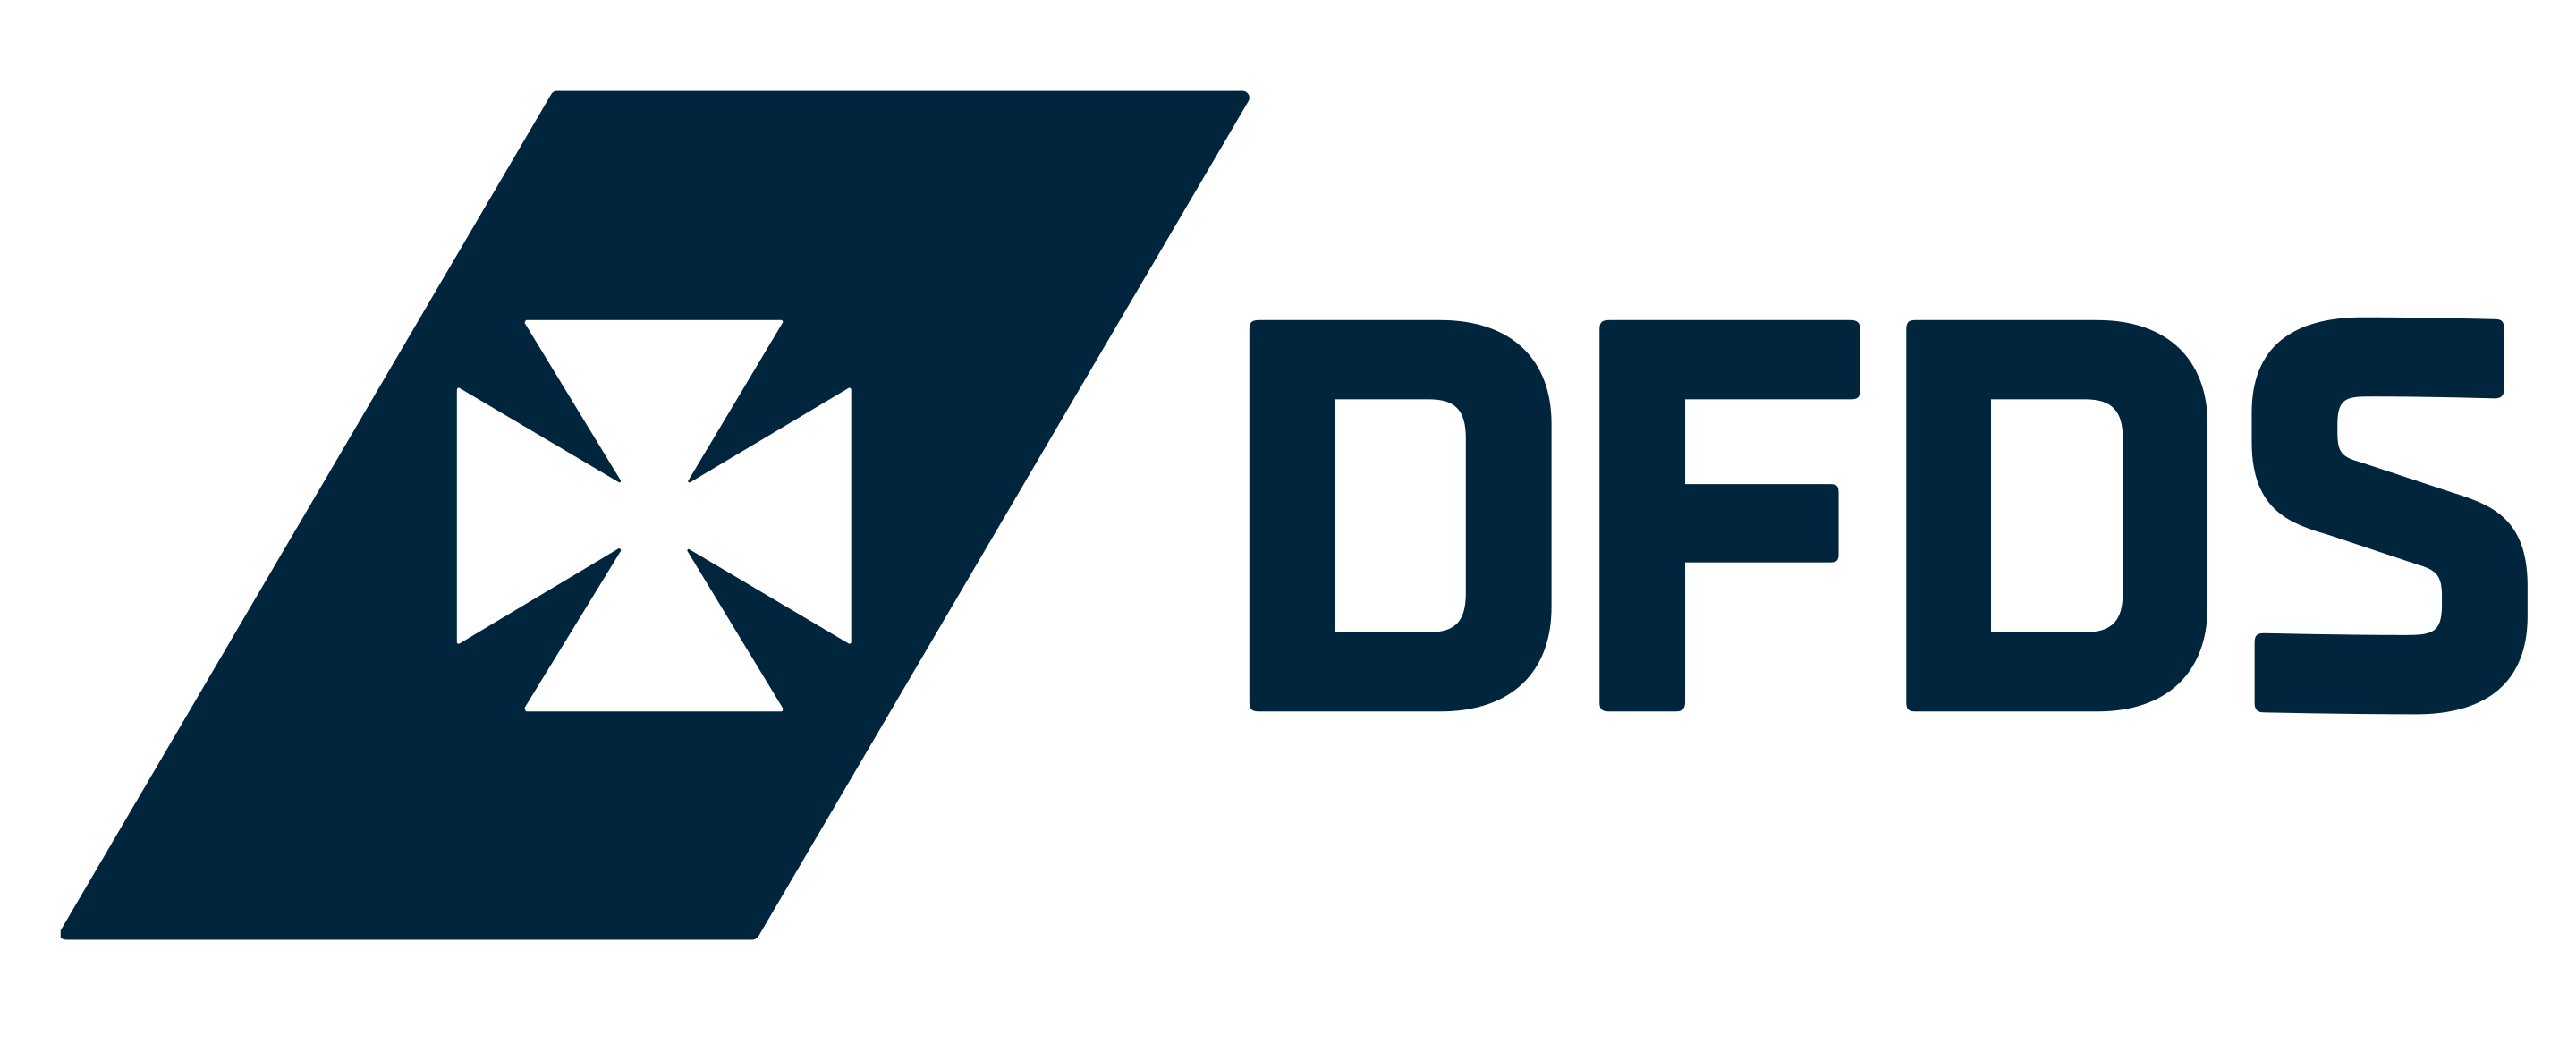 DFDS এর লোগো